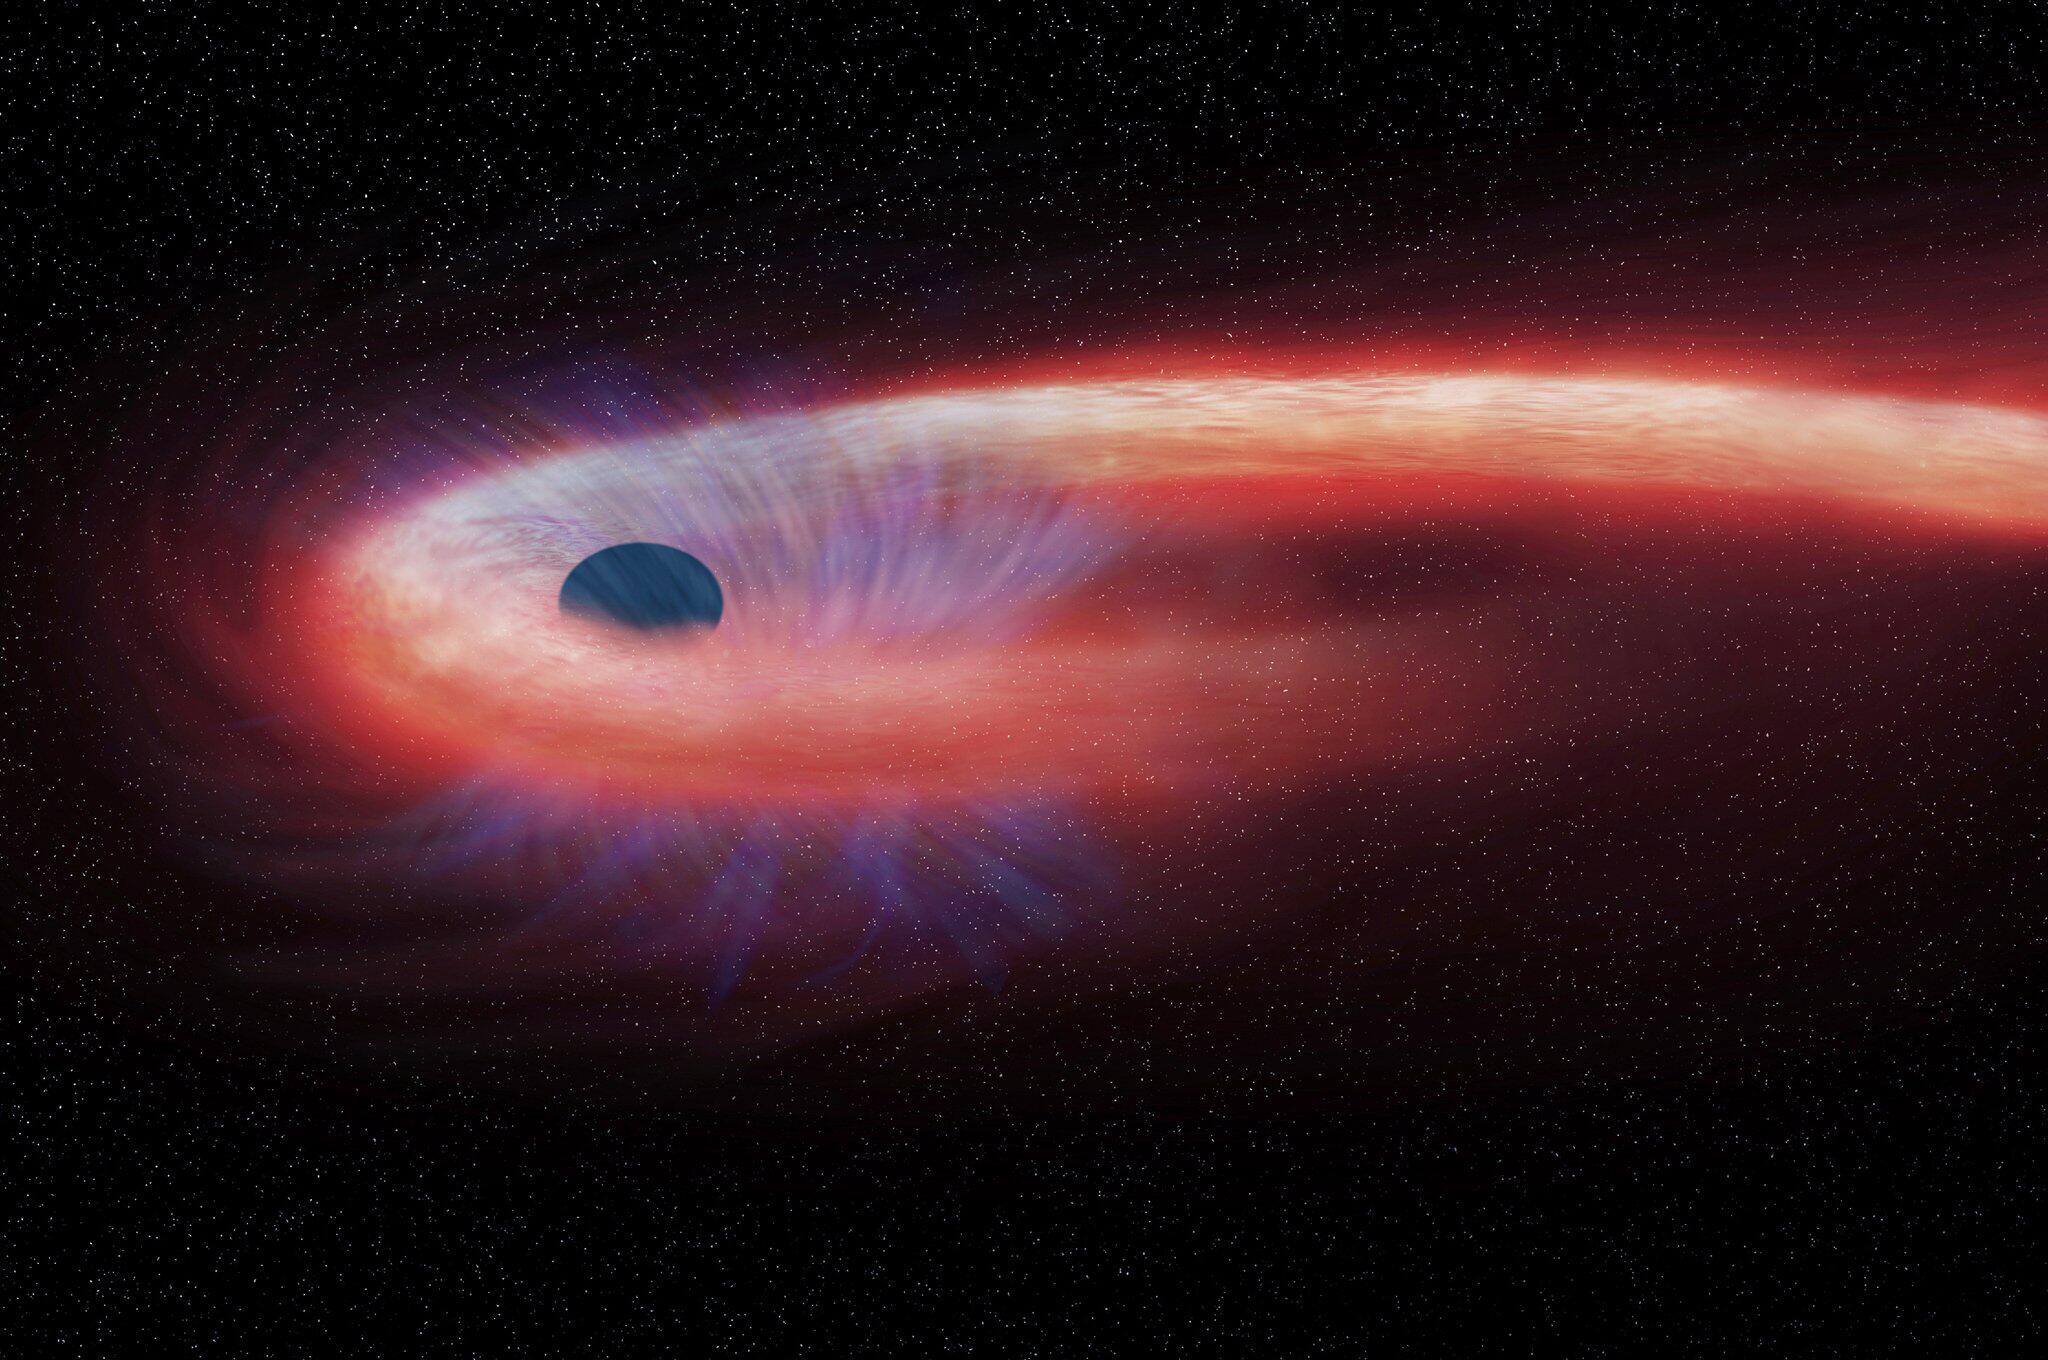 Код черной дыры. Черная дыра. Большая черная дыра. Поглощение звезды черной дырой. Чёрная дыра в космосе.